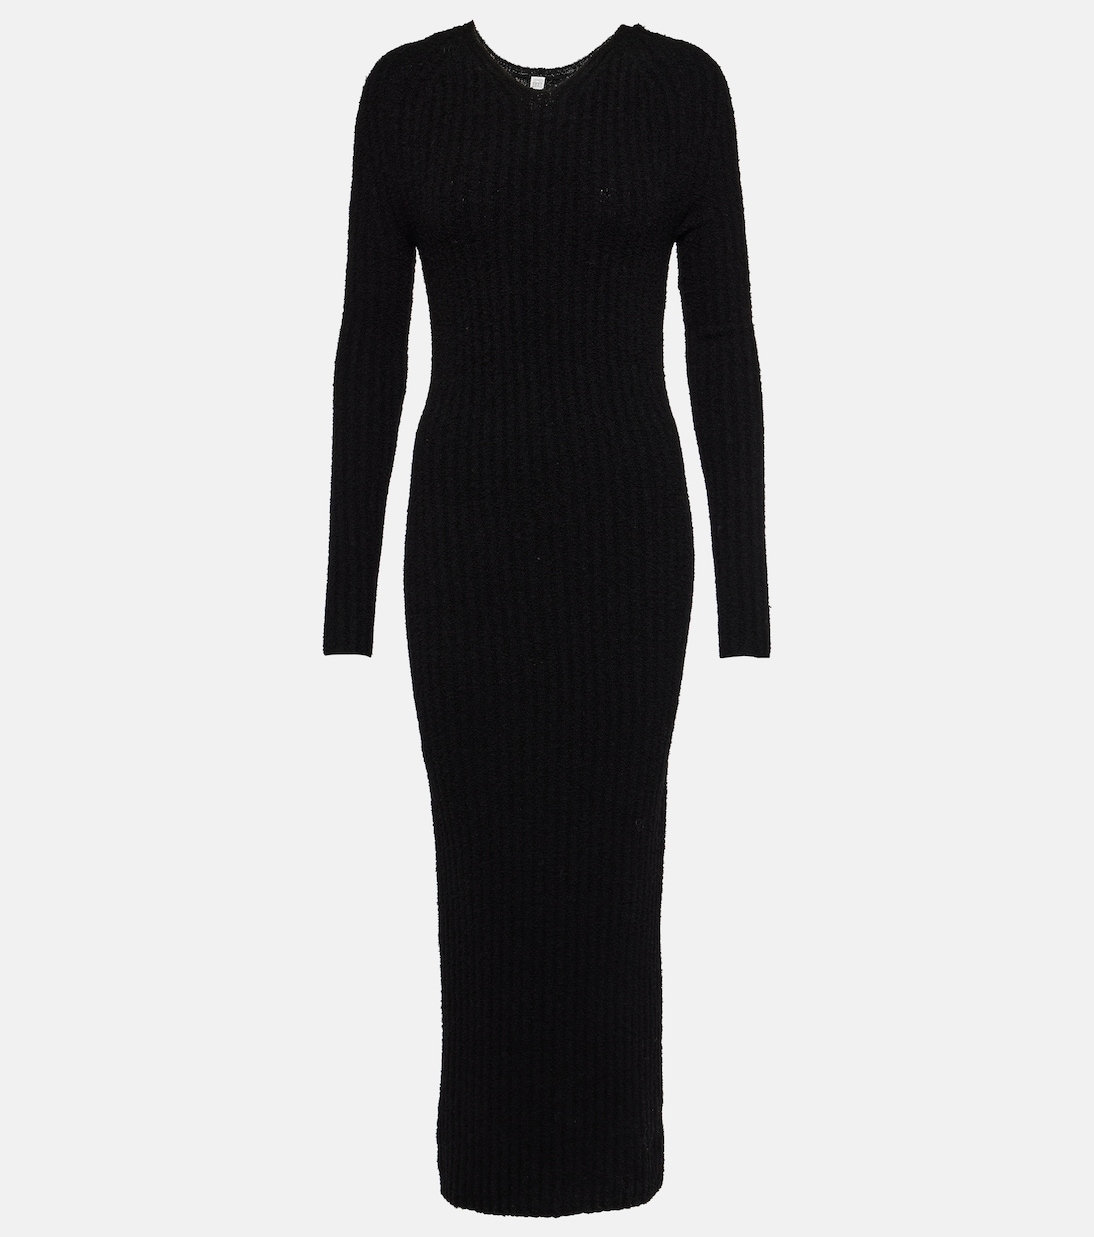 Платье макси ребристой вязки из смесовой шерсти Toteme, черный